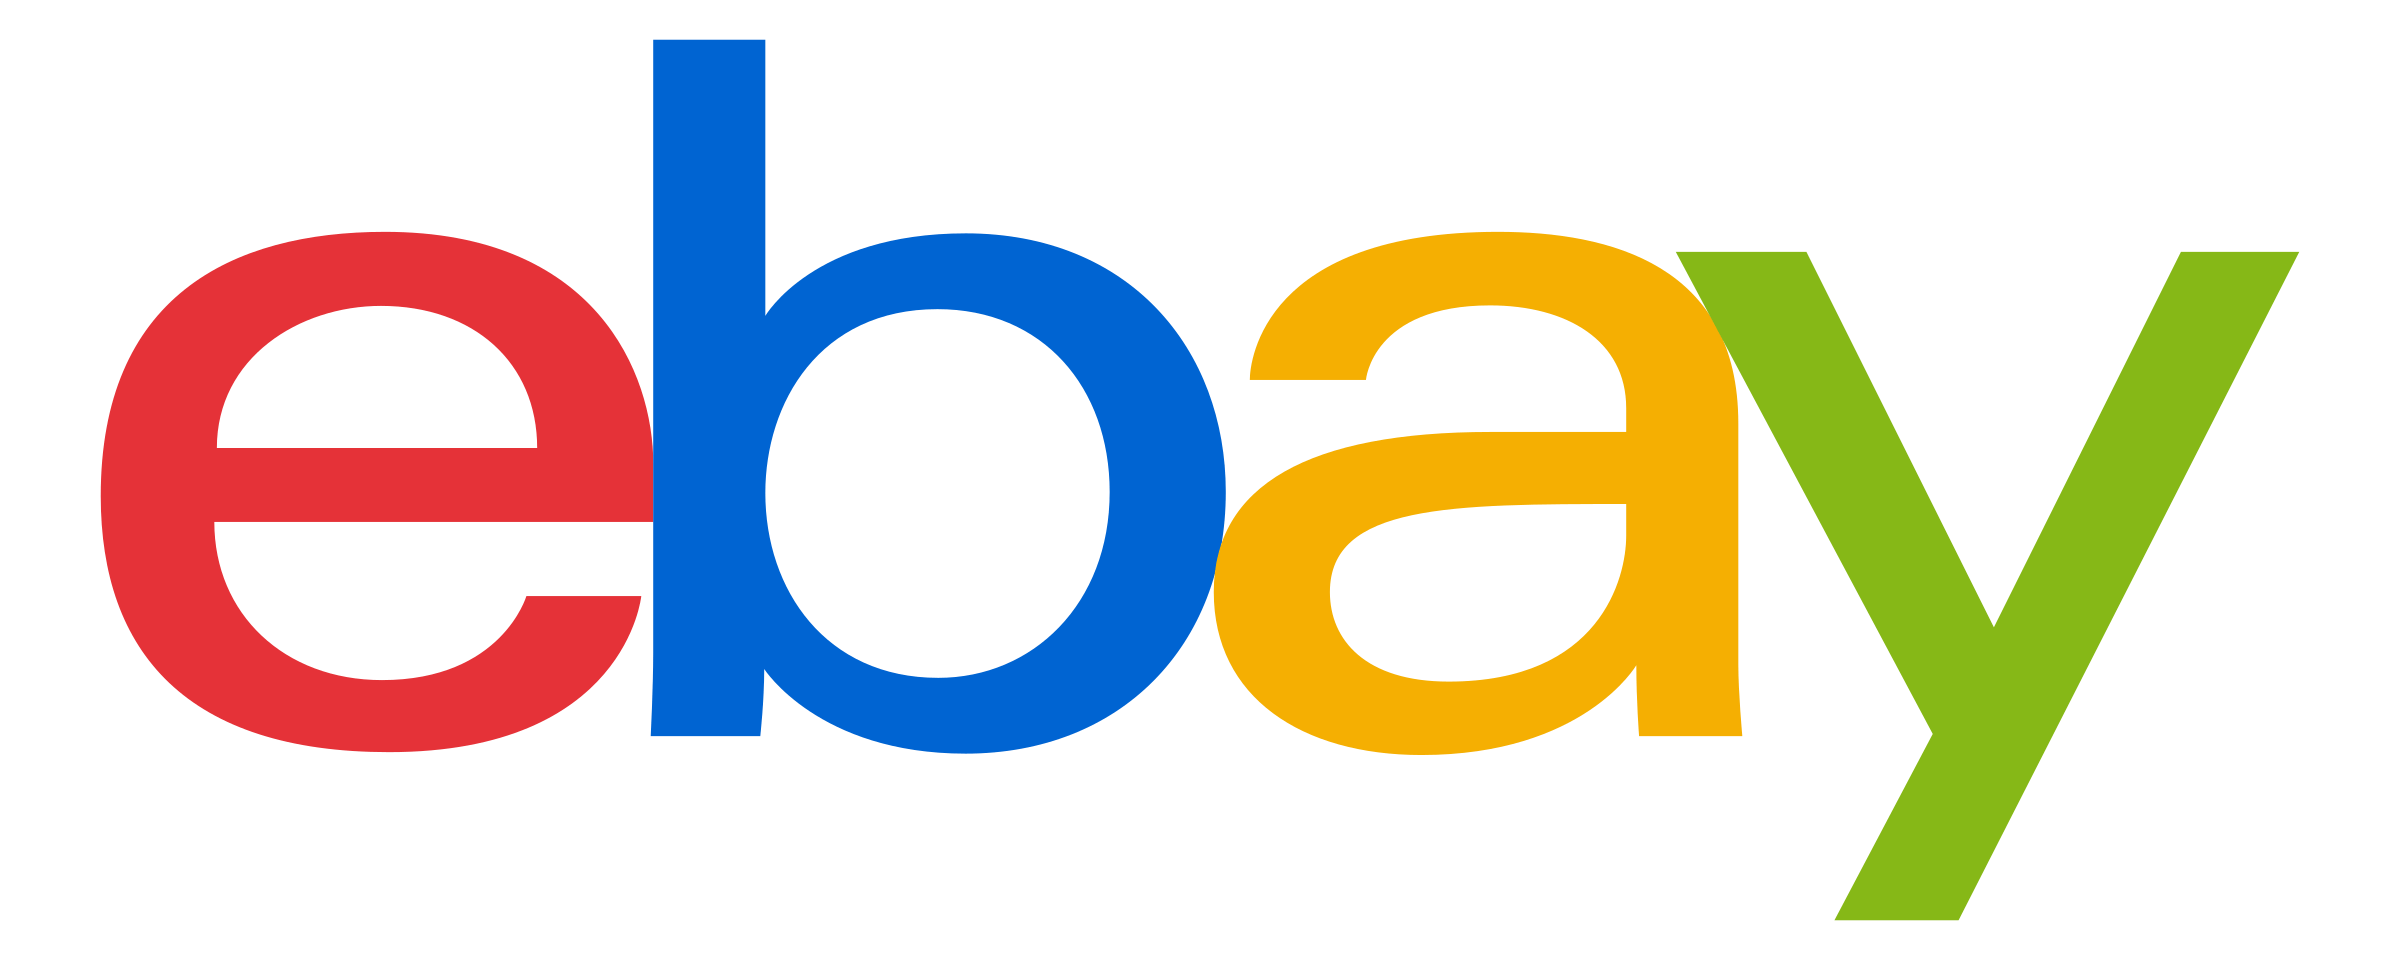 ebay vector logo